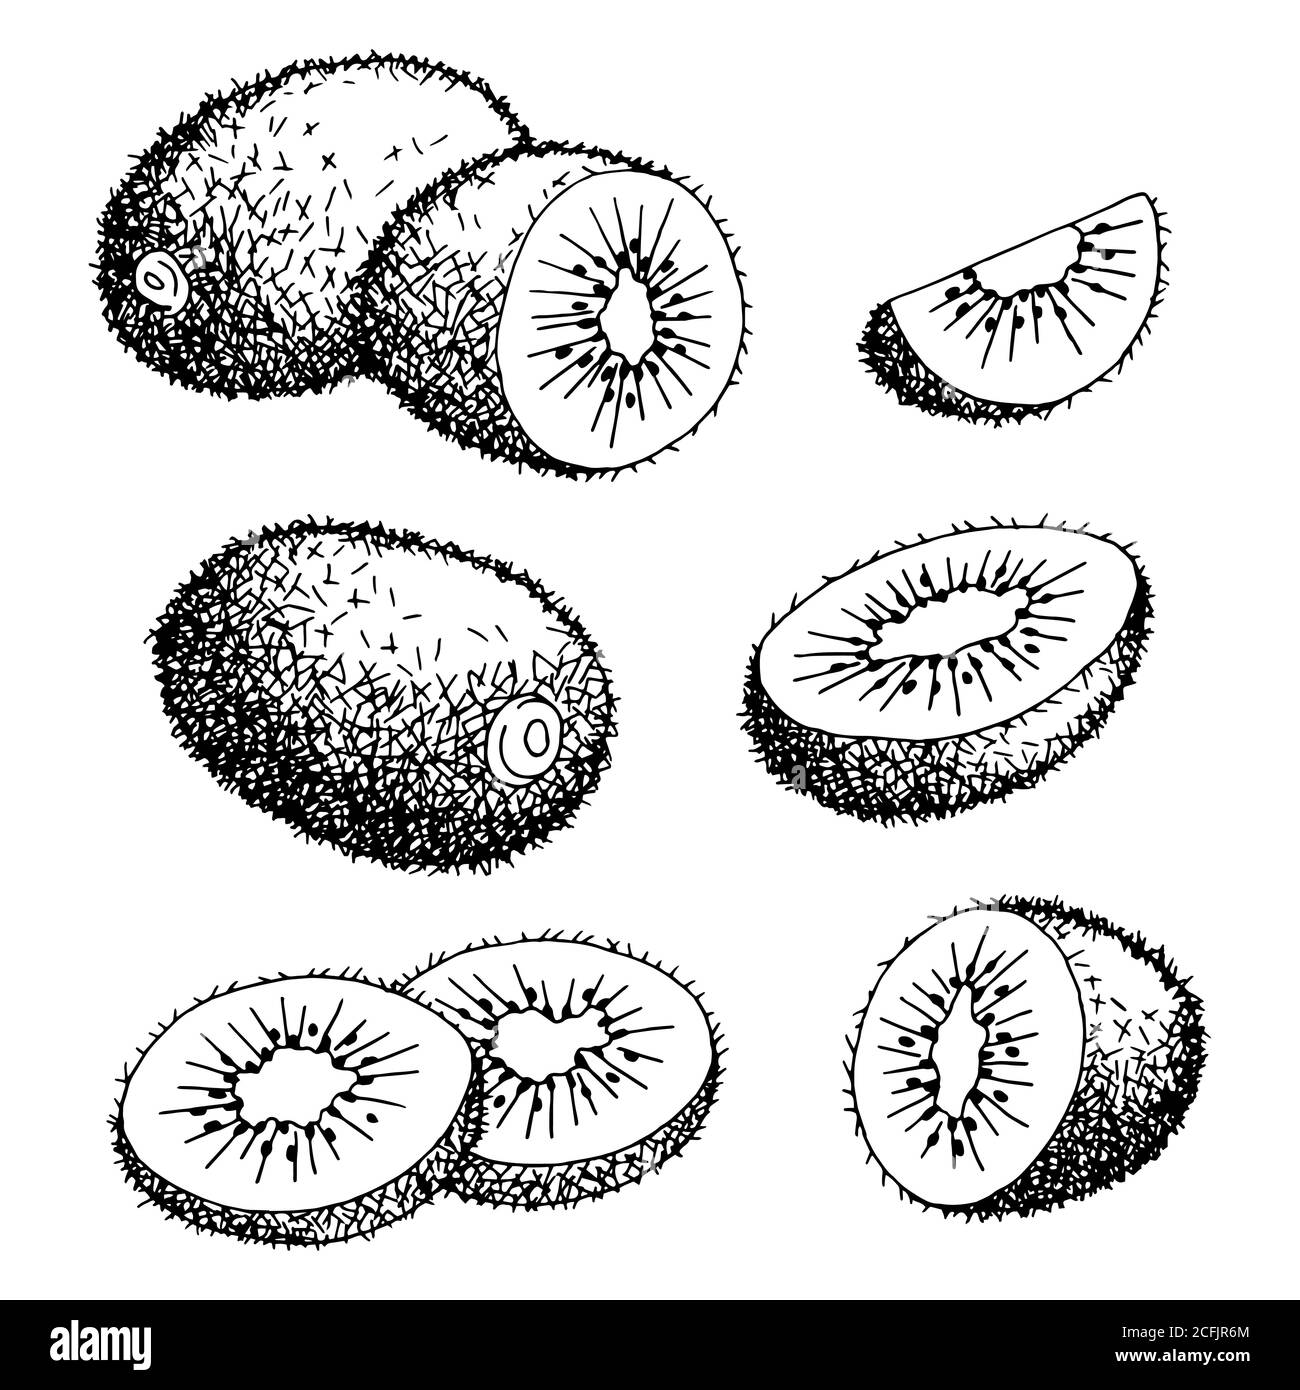 Kiwi design Imágenes de stock en blanco y negro - Alamy